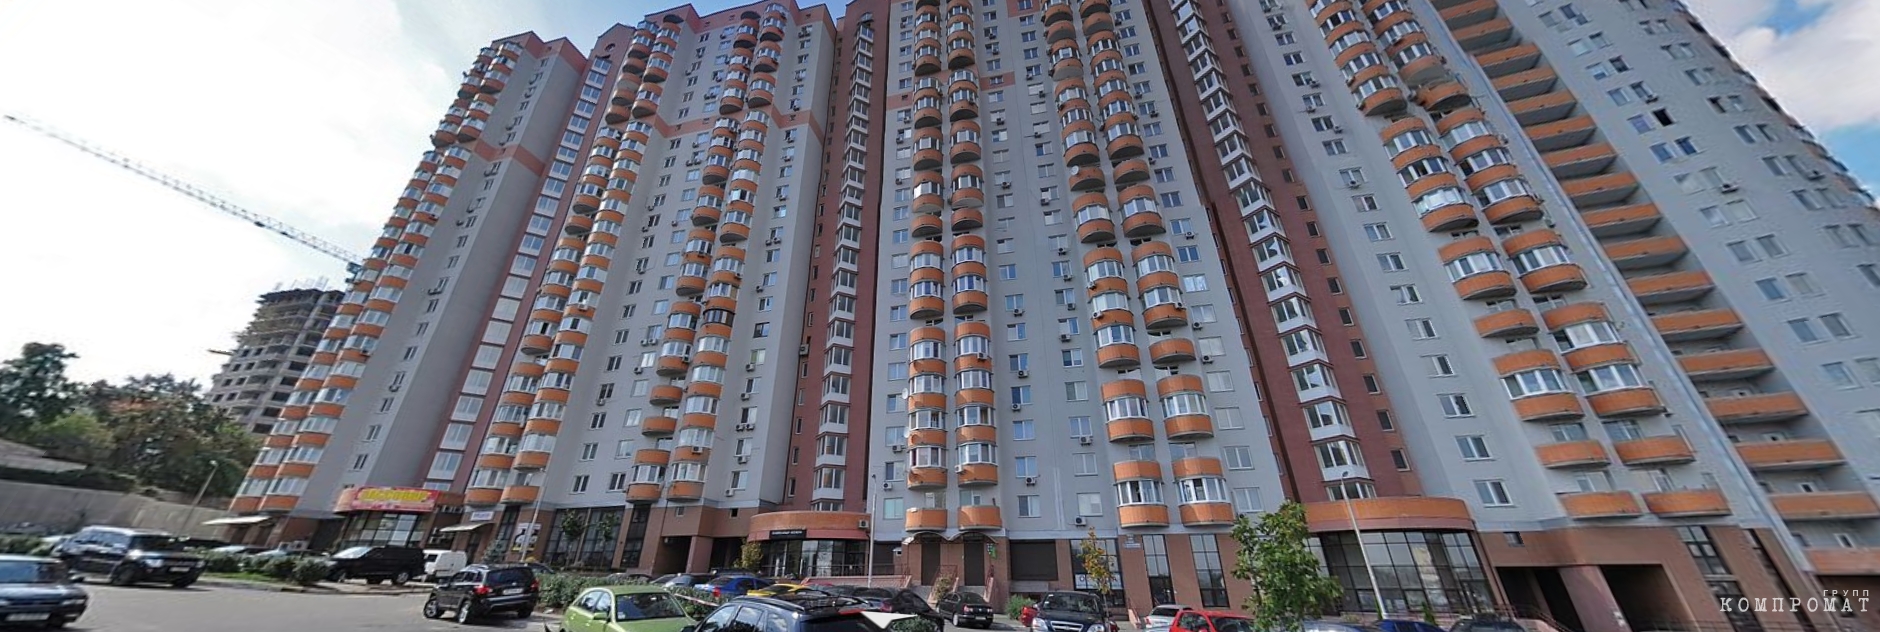 Высотка в Киеве, где находится квартира Бориса Коновалова